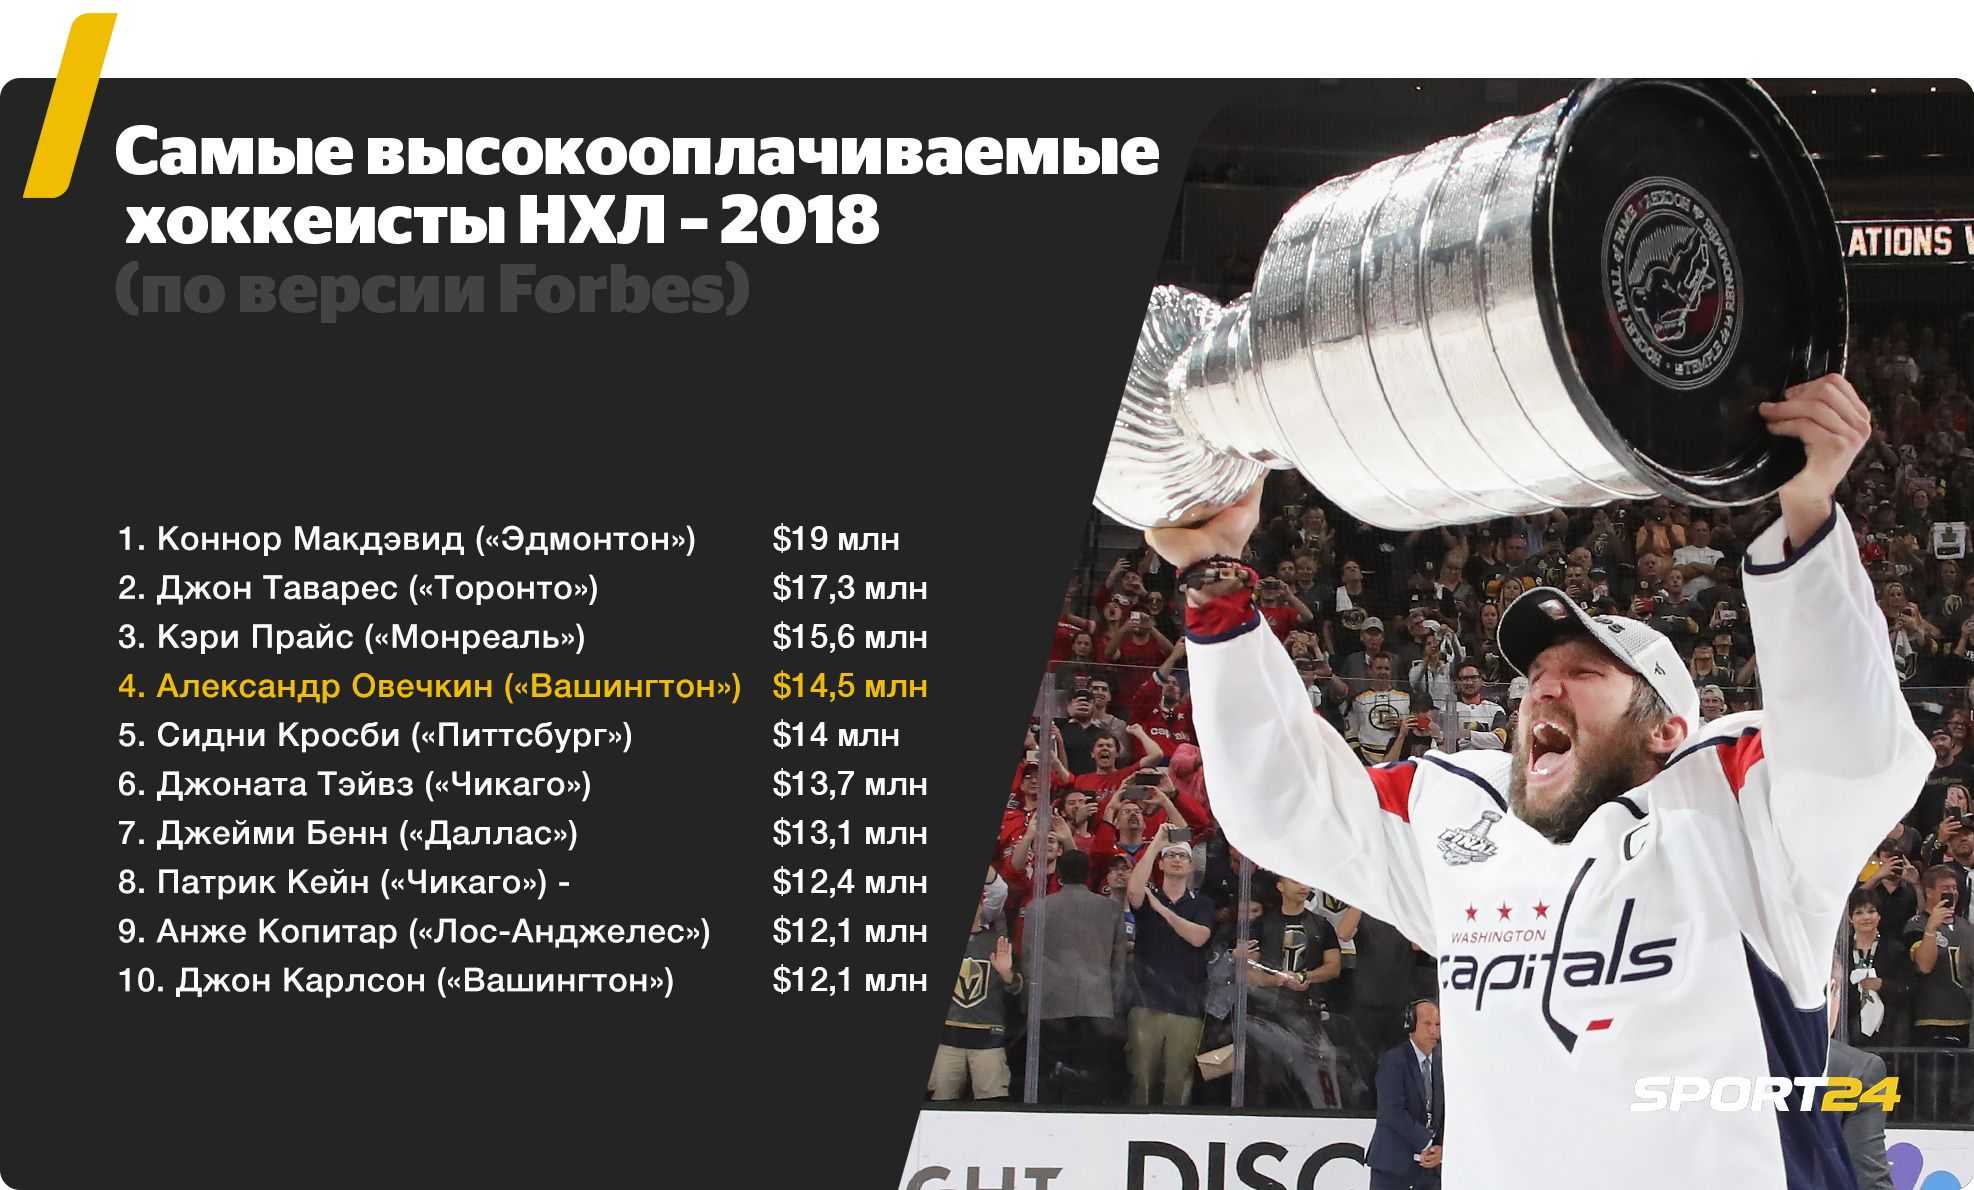 Сколько дают за победу в нхл. Зарплата Овечкина в НХЛ. Зарплата хоккеистов. Самые высокооплачиваемые хоккеисты НХЛ. Самый высокооплачиваемый хоккеист.